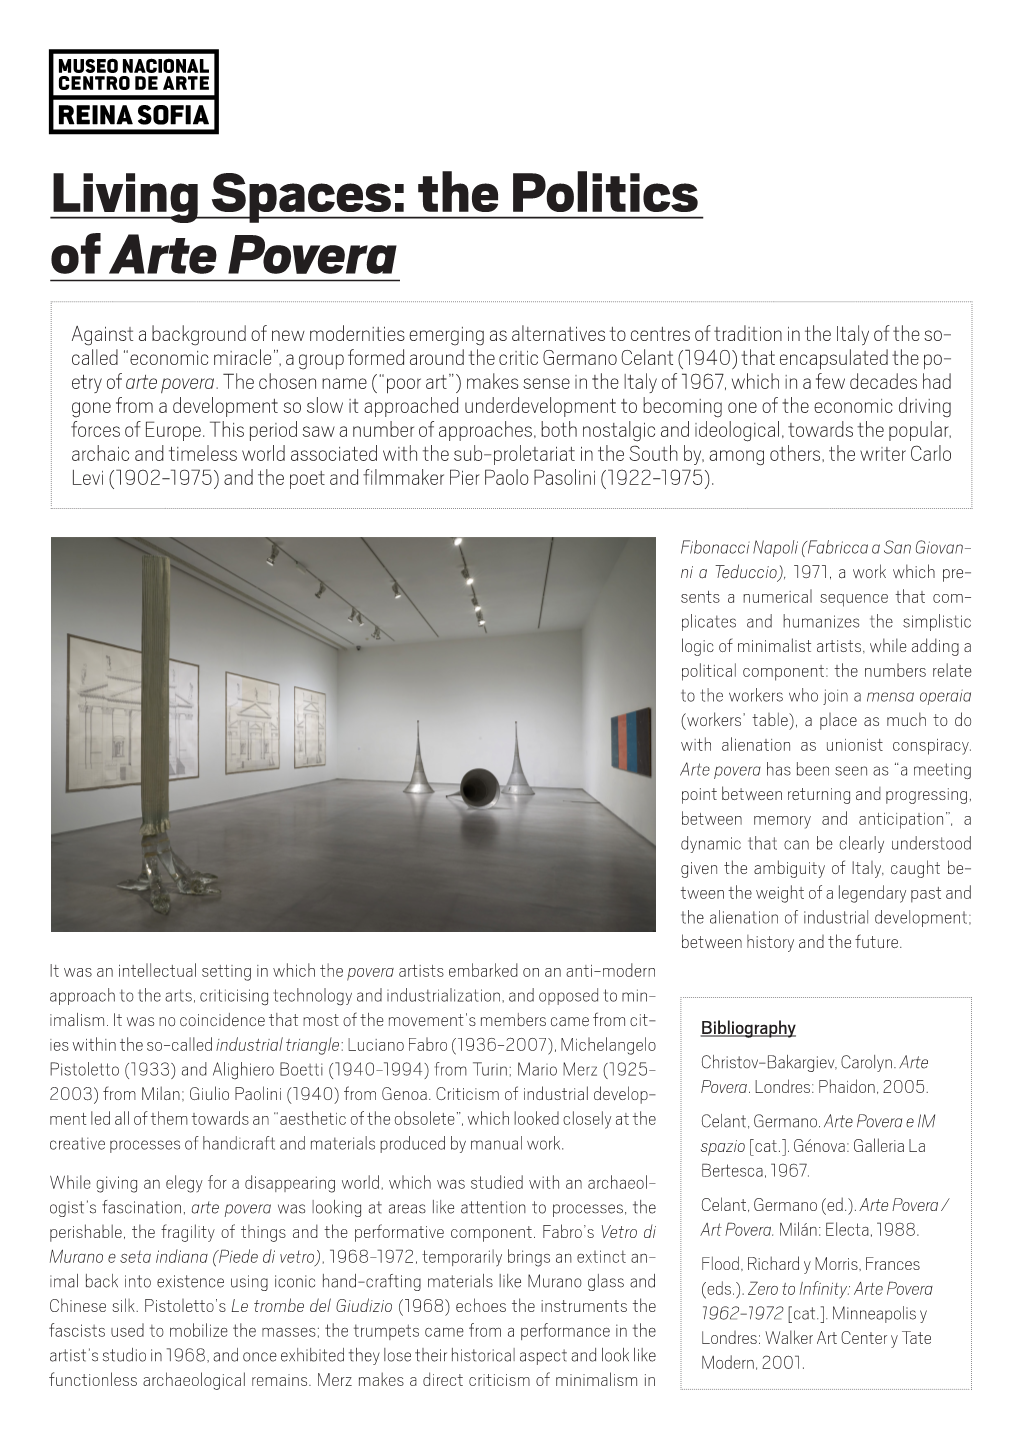 The Politics of Arte Povera